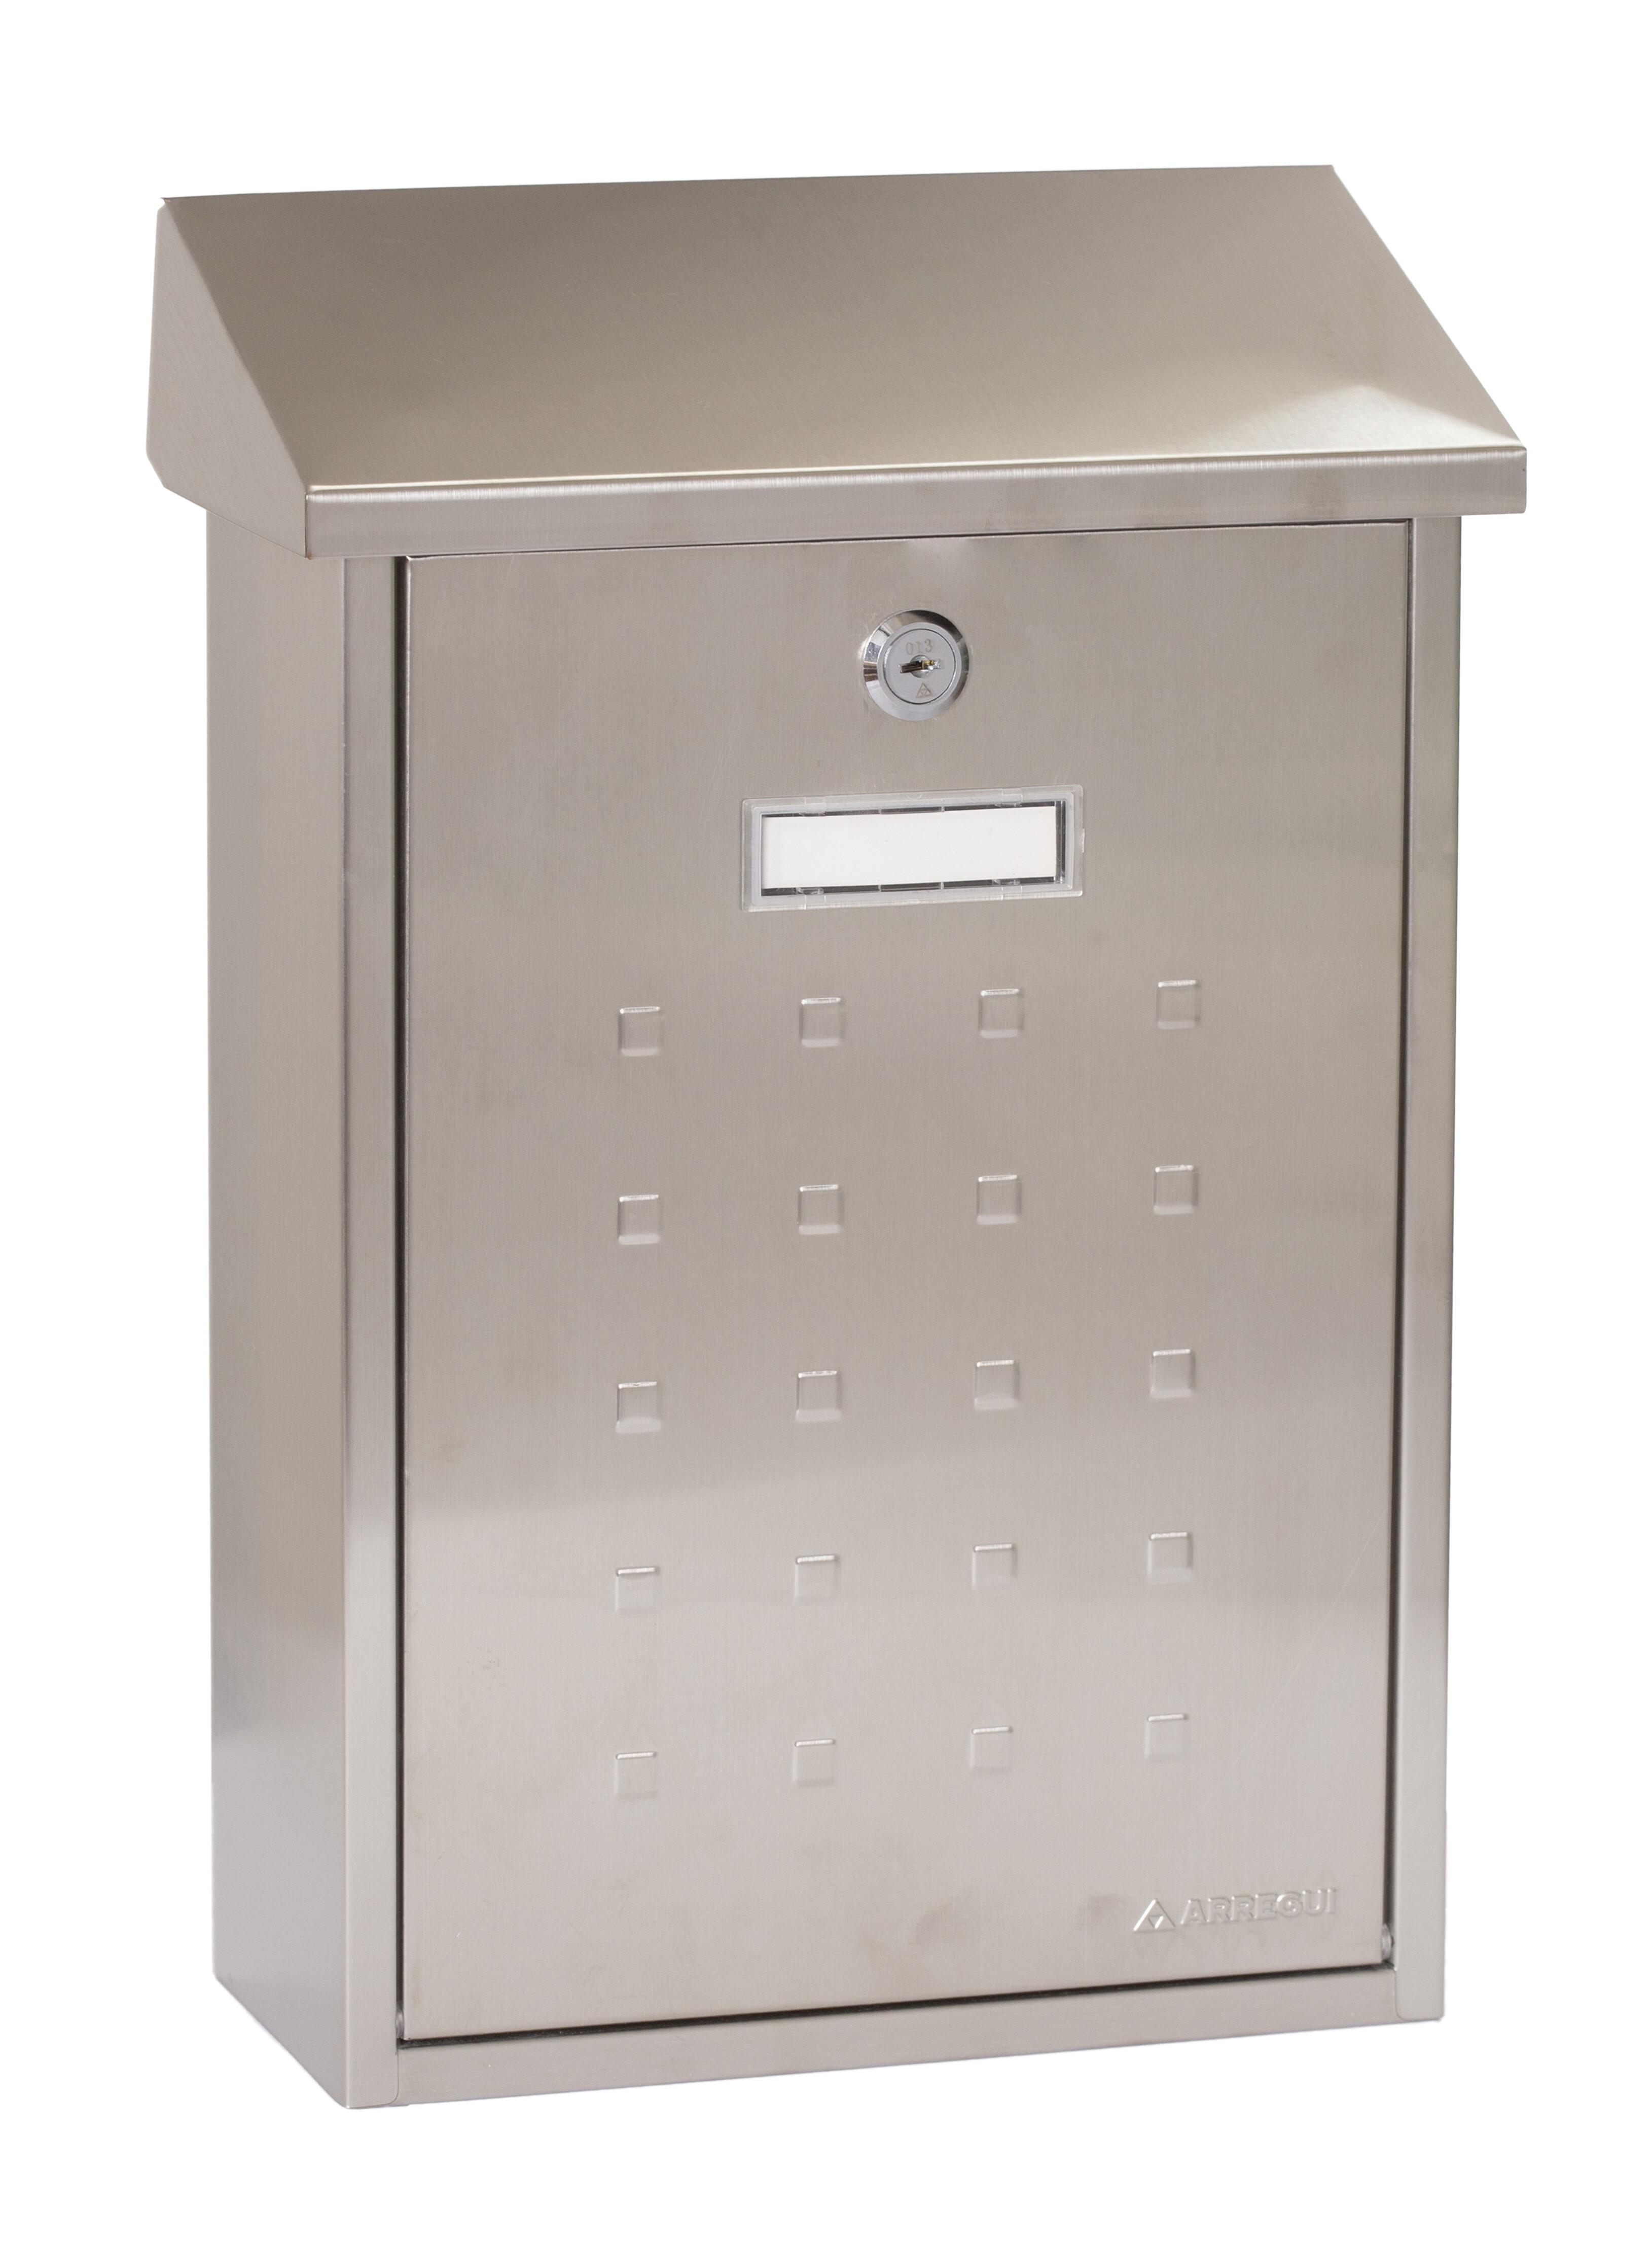 Buzón de correo de metal en gris / plata de 40x27x12 cm